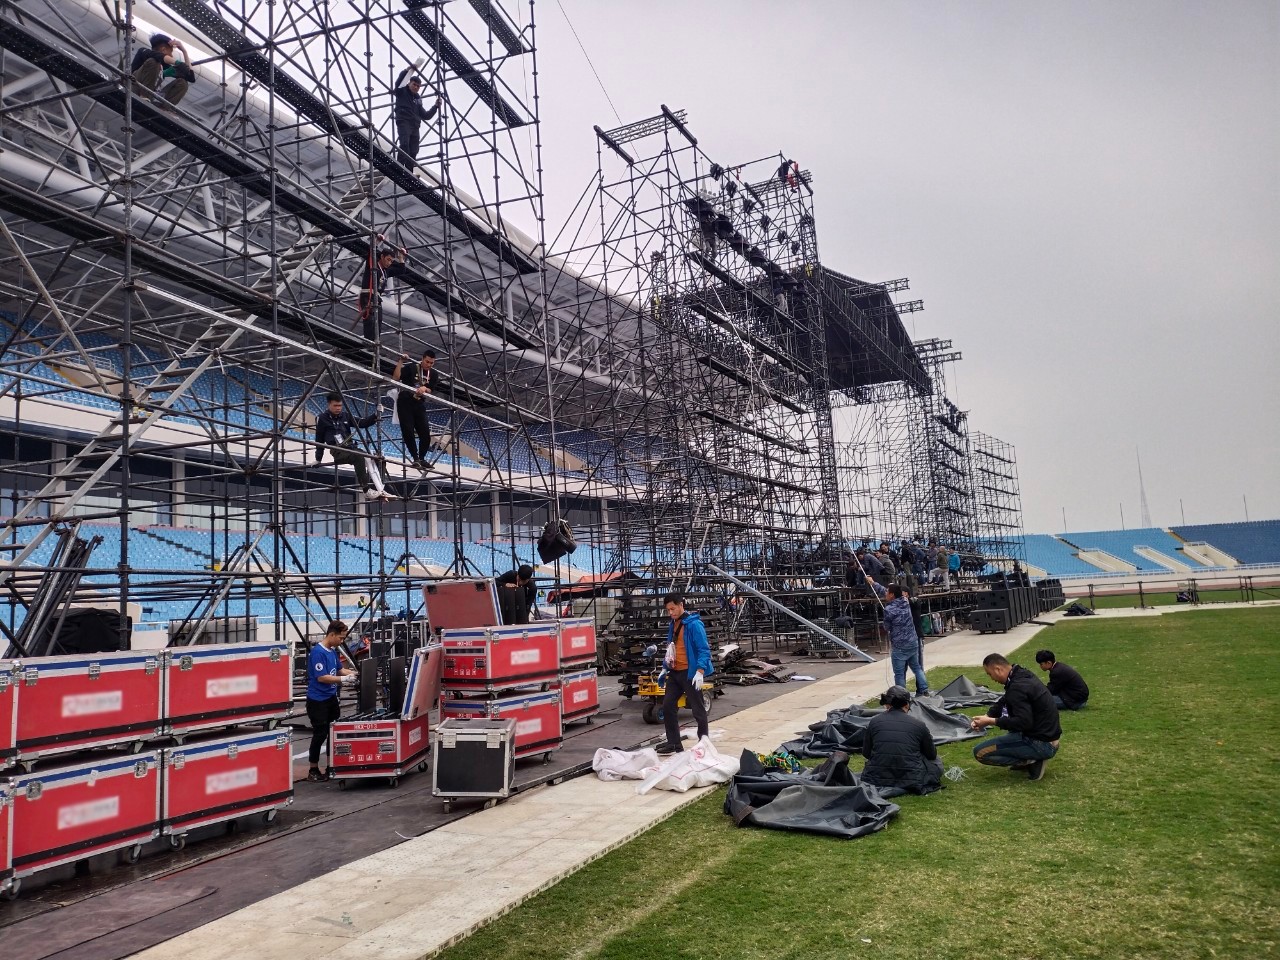 Sân khấu của Đại nhạc hội KPop đang dần được hoàn thiện